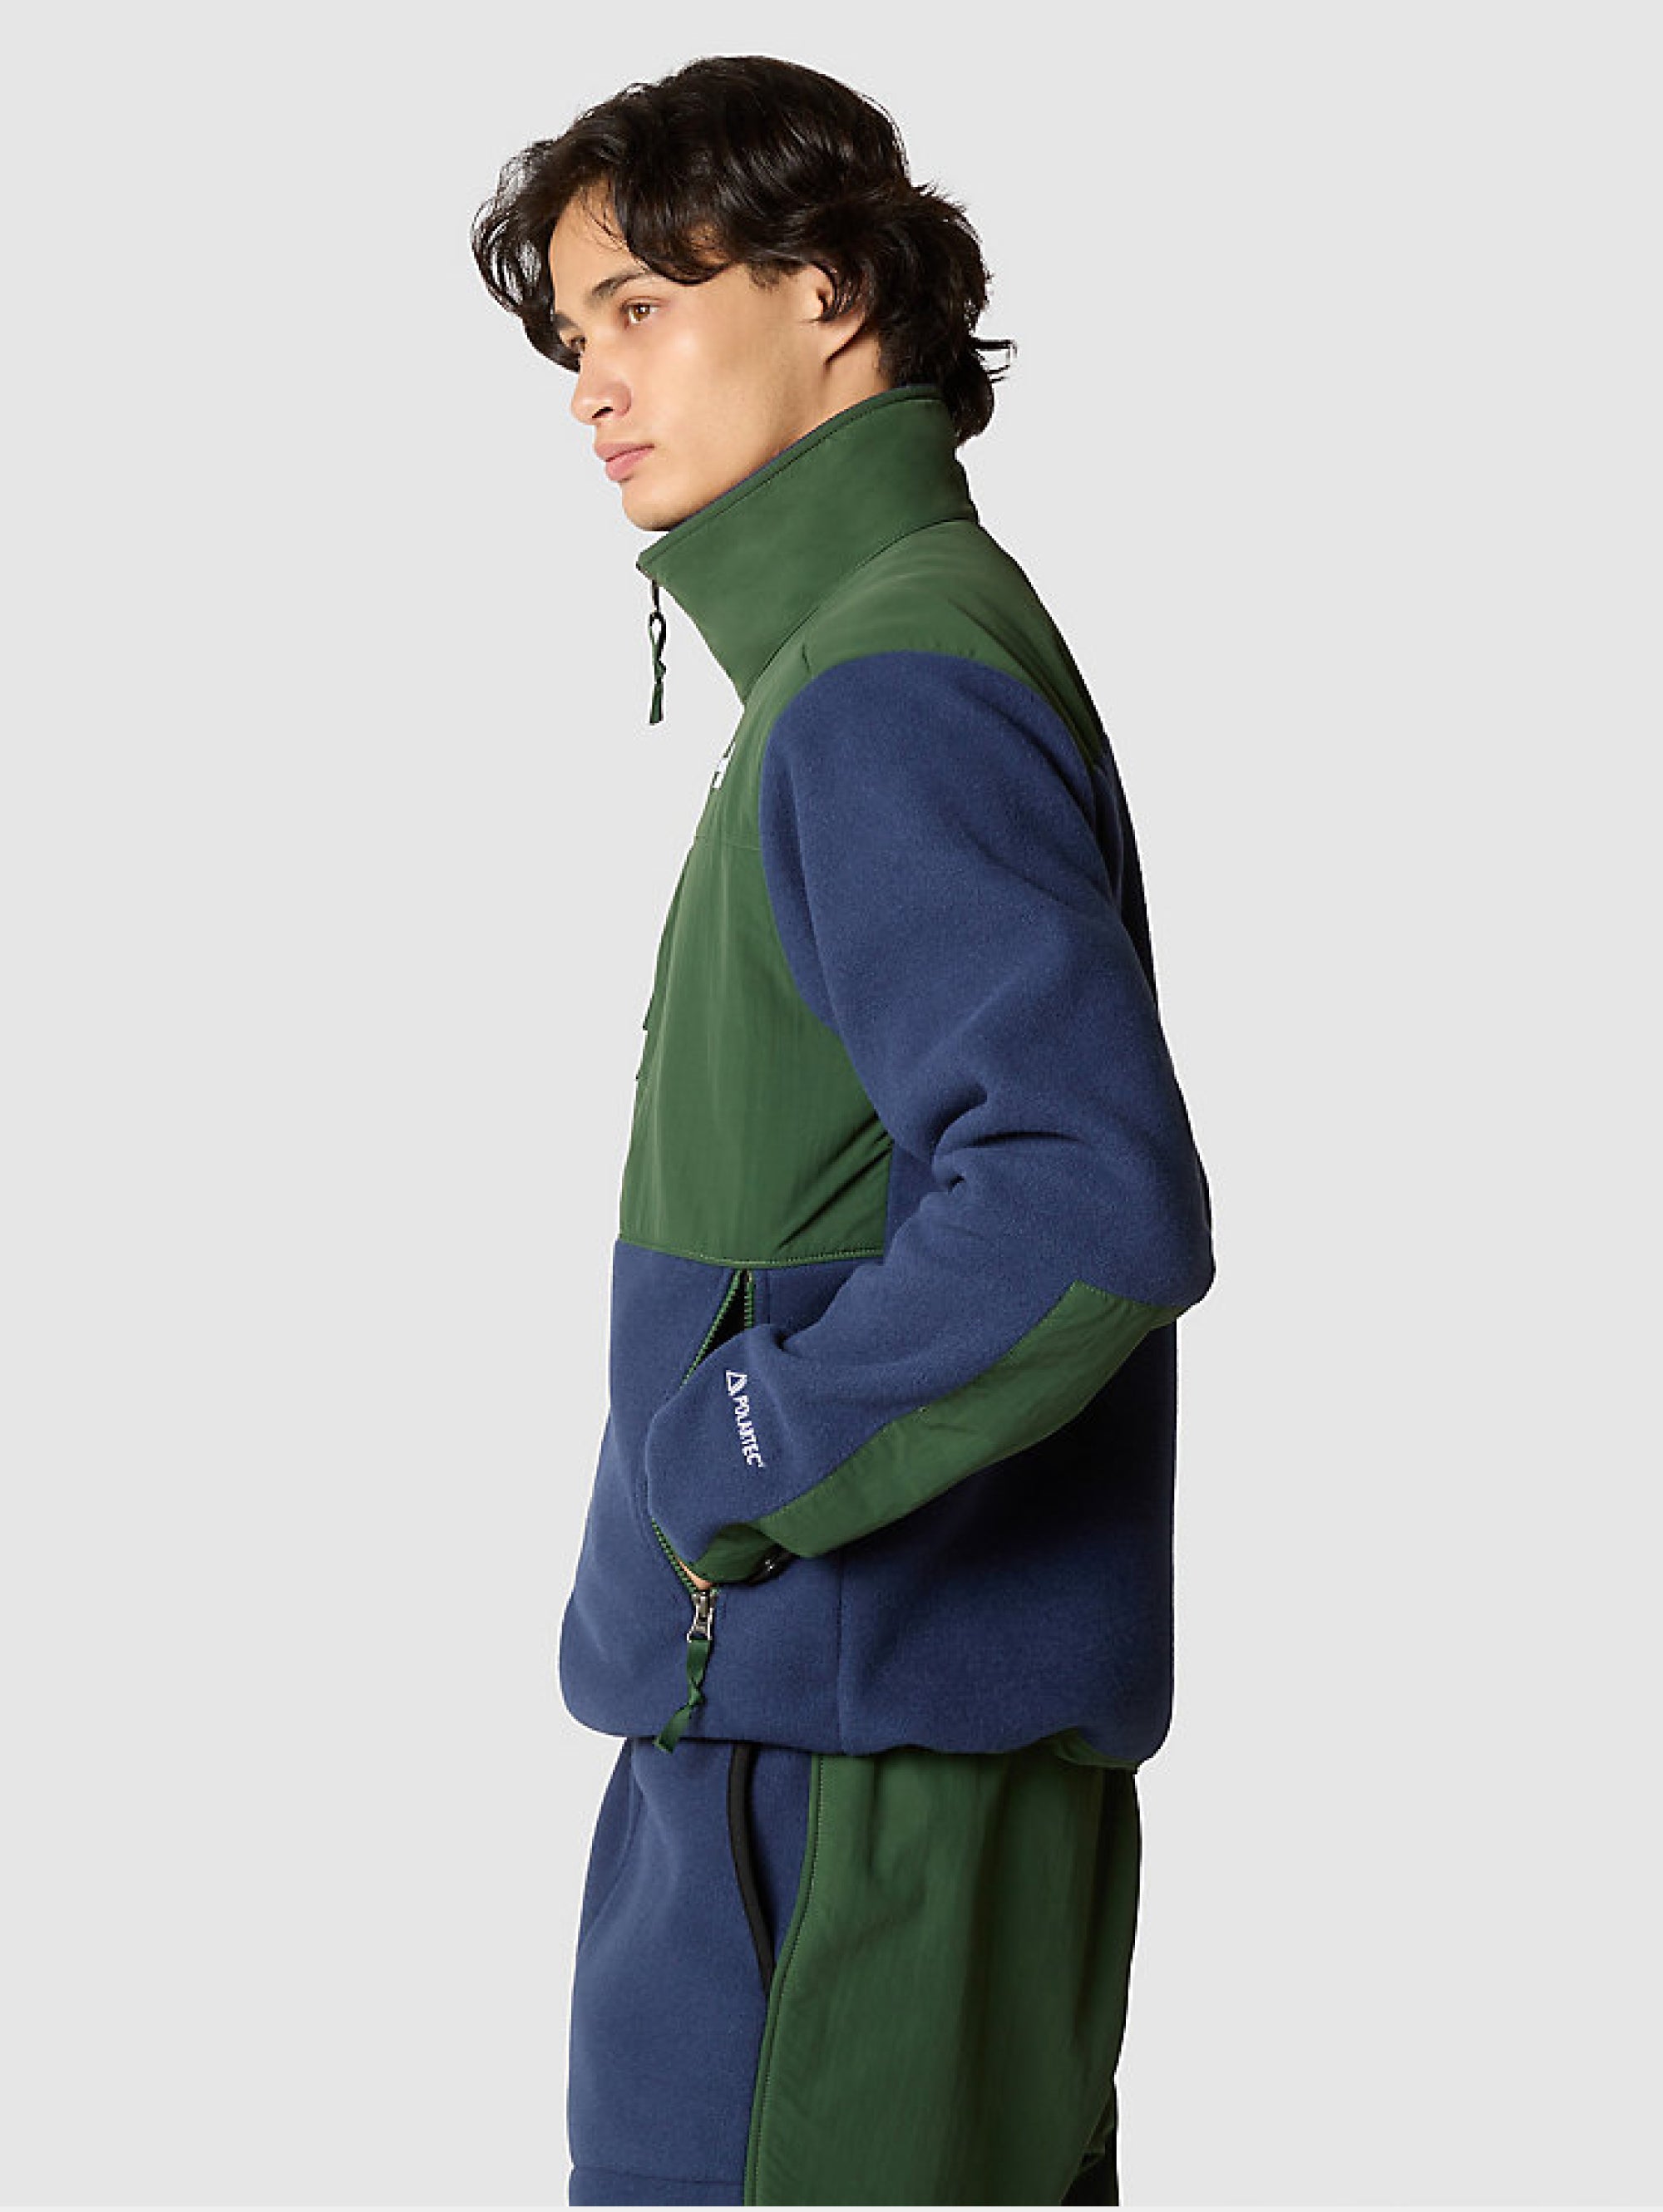 THE NORTH FACE - Green/Blue Recycled Polartec Fleece Denali Jacket